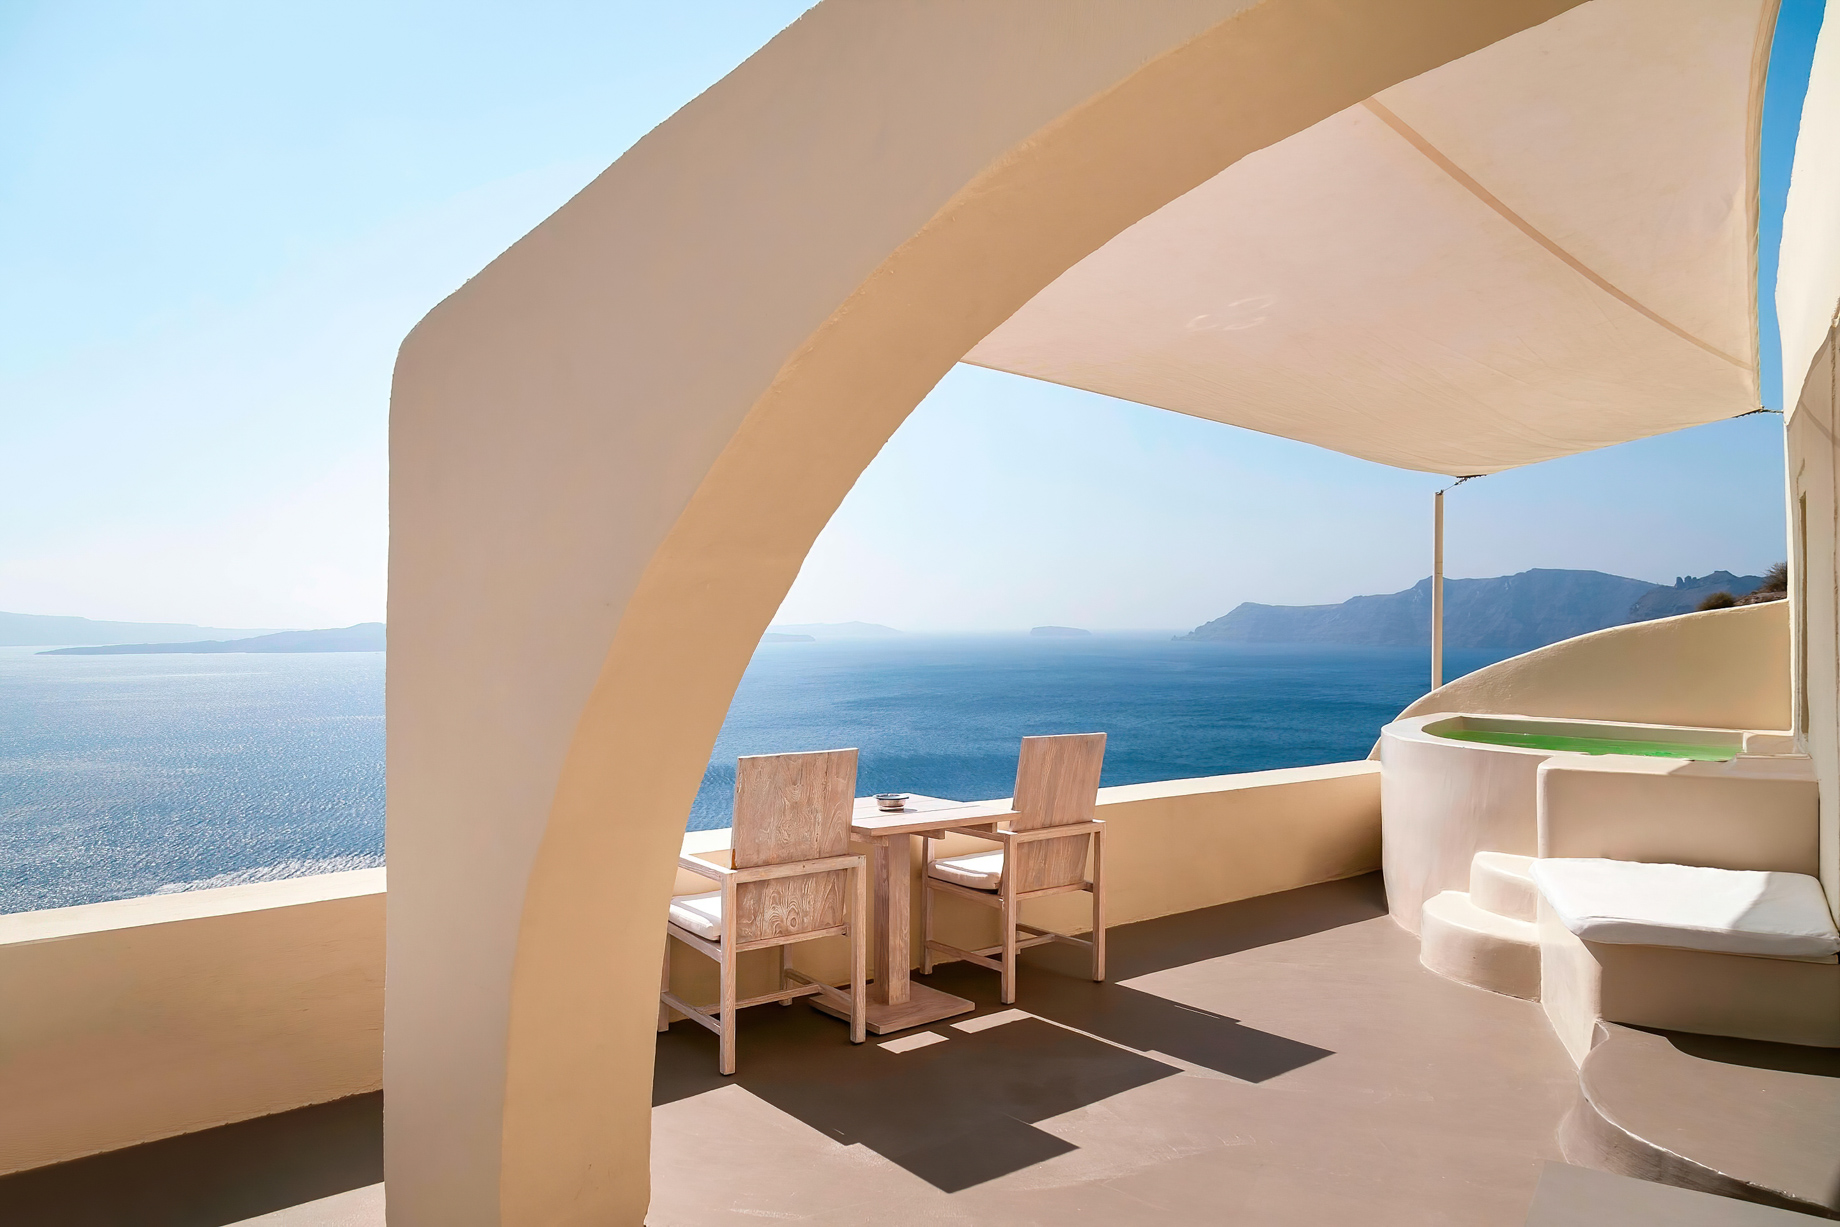 Mystique Hotel Santorini – Oia, Santorini Island, Greece – Private Terrace with Jacuzzi